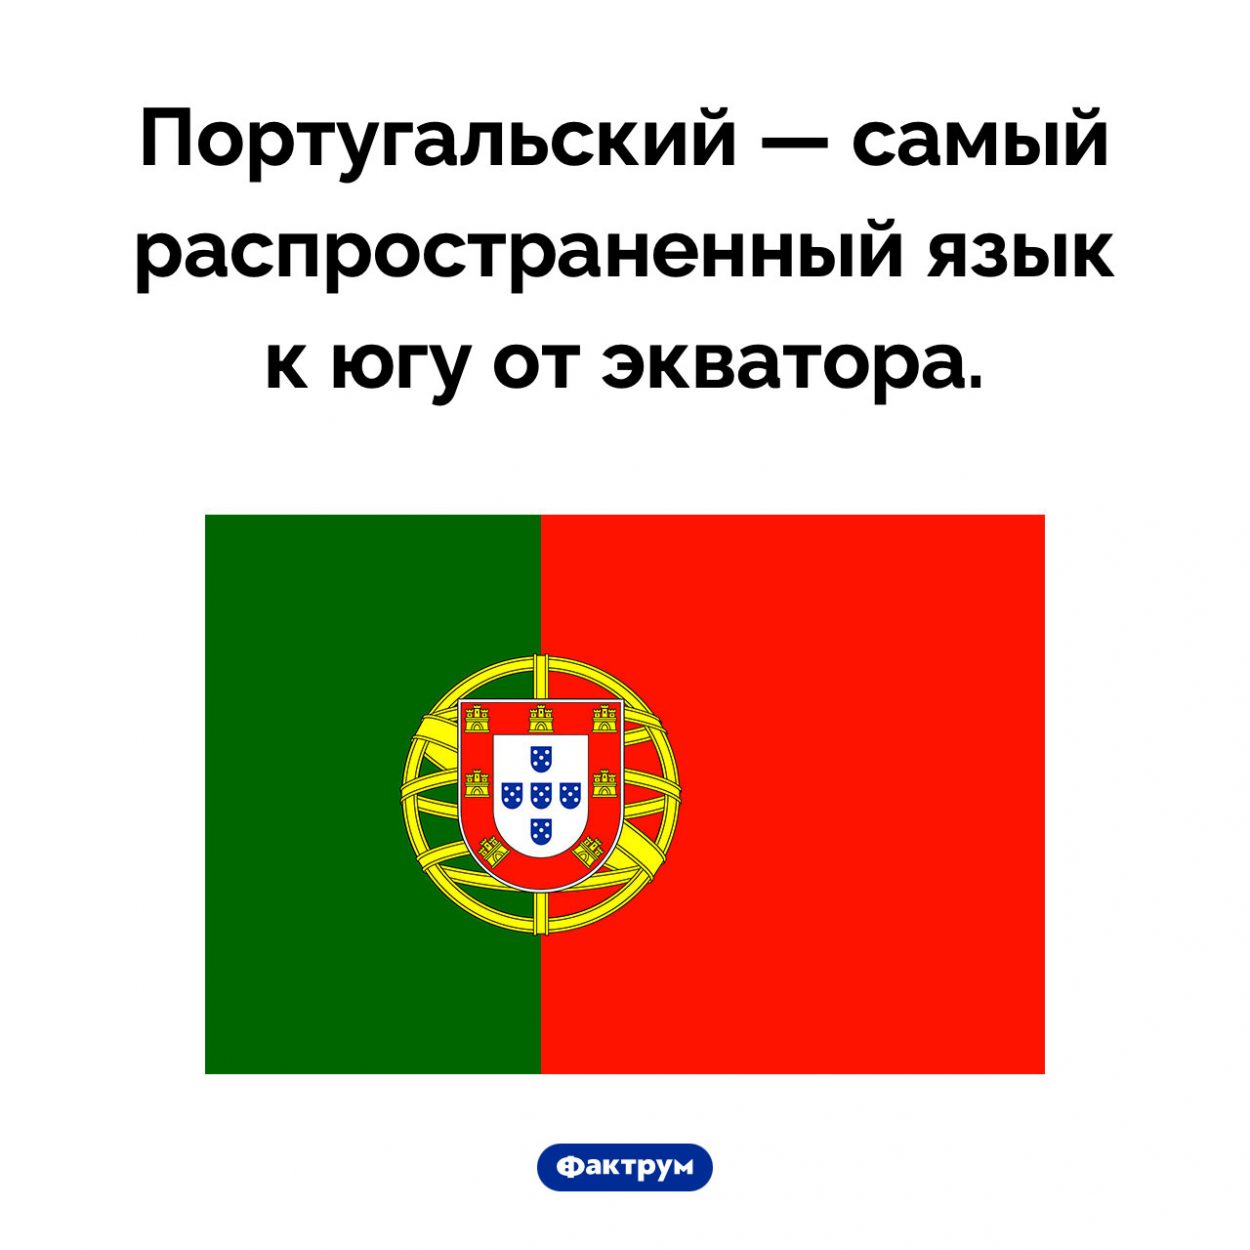 Португальский язык очень распространен. Португальский — самый распространенный язык к югу от экватора.